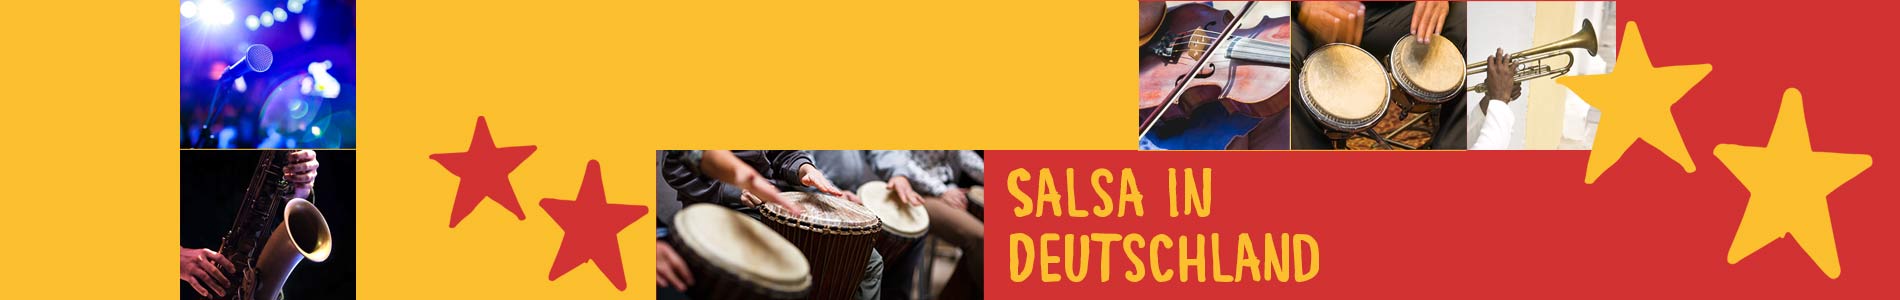 Salsa in Bous – Salsa lernen und tanzen, Tanzkurse, Partys, Veranstaltungen